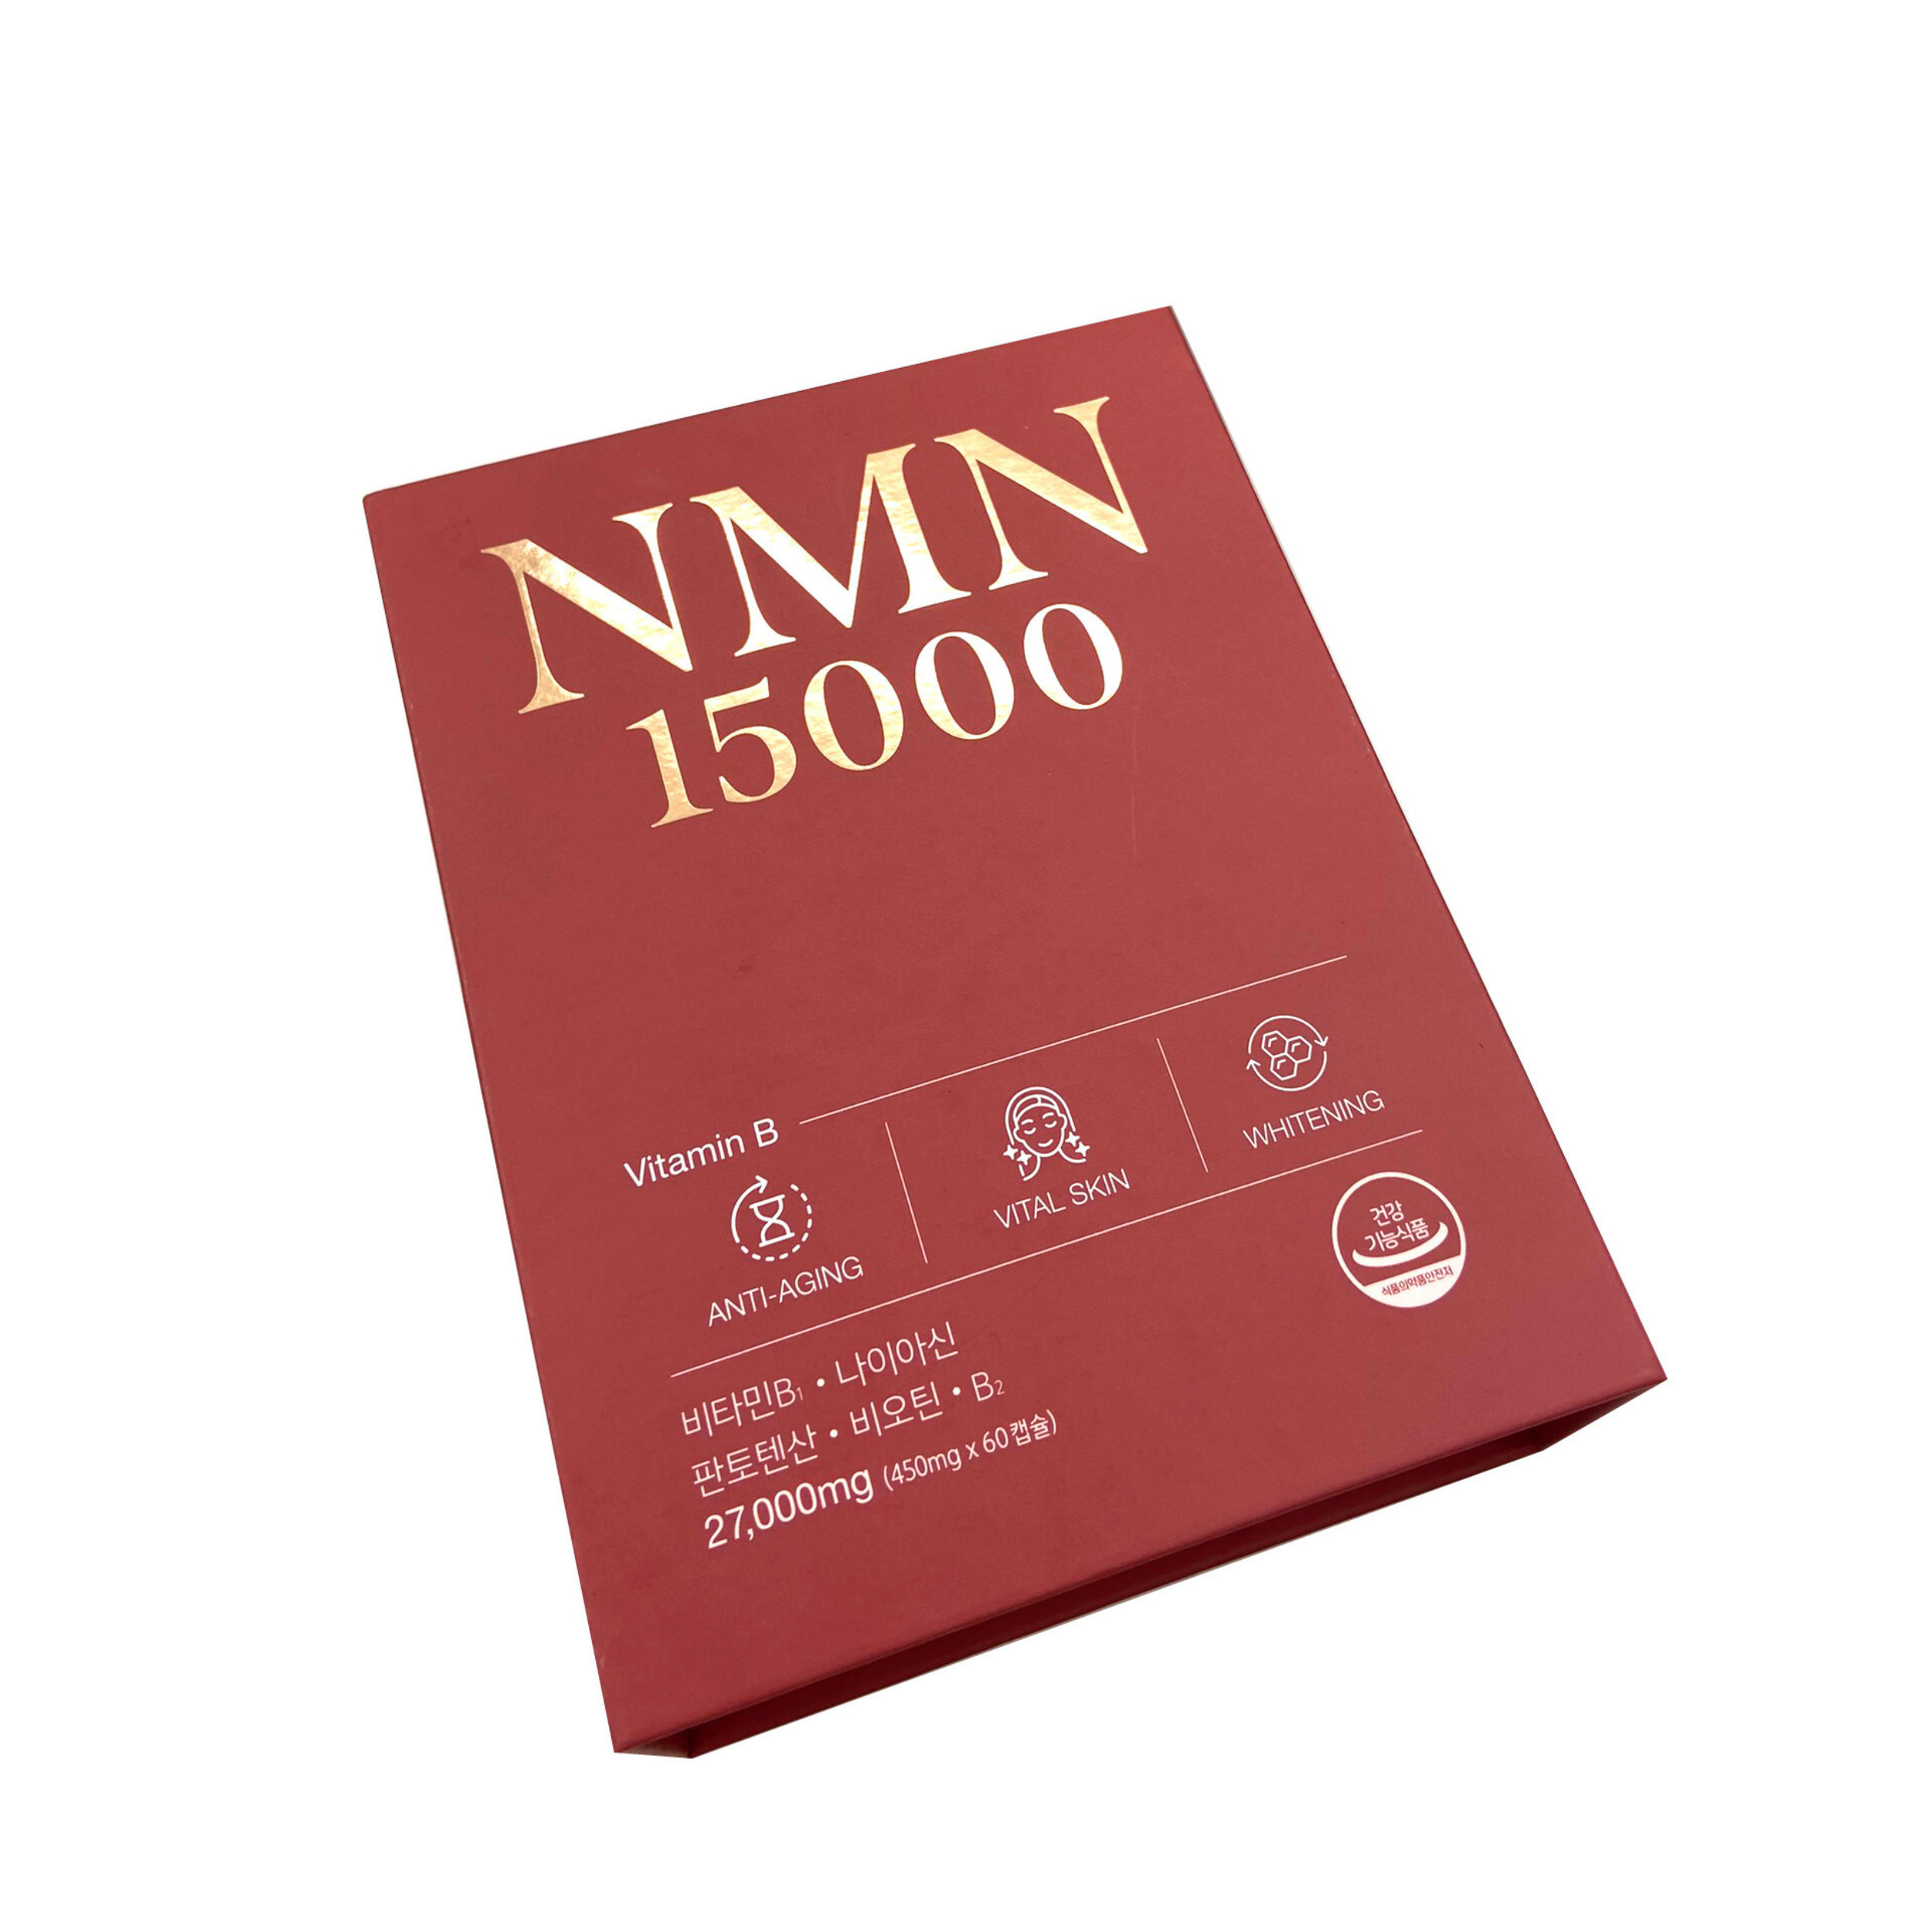 Mua viên chống lão hóa NMN 15000 ở đâu?